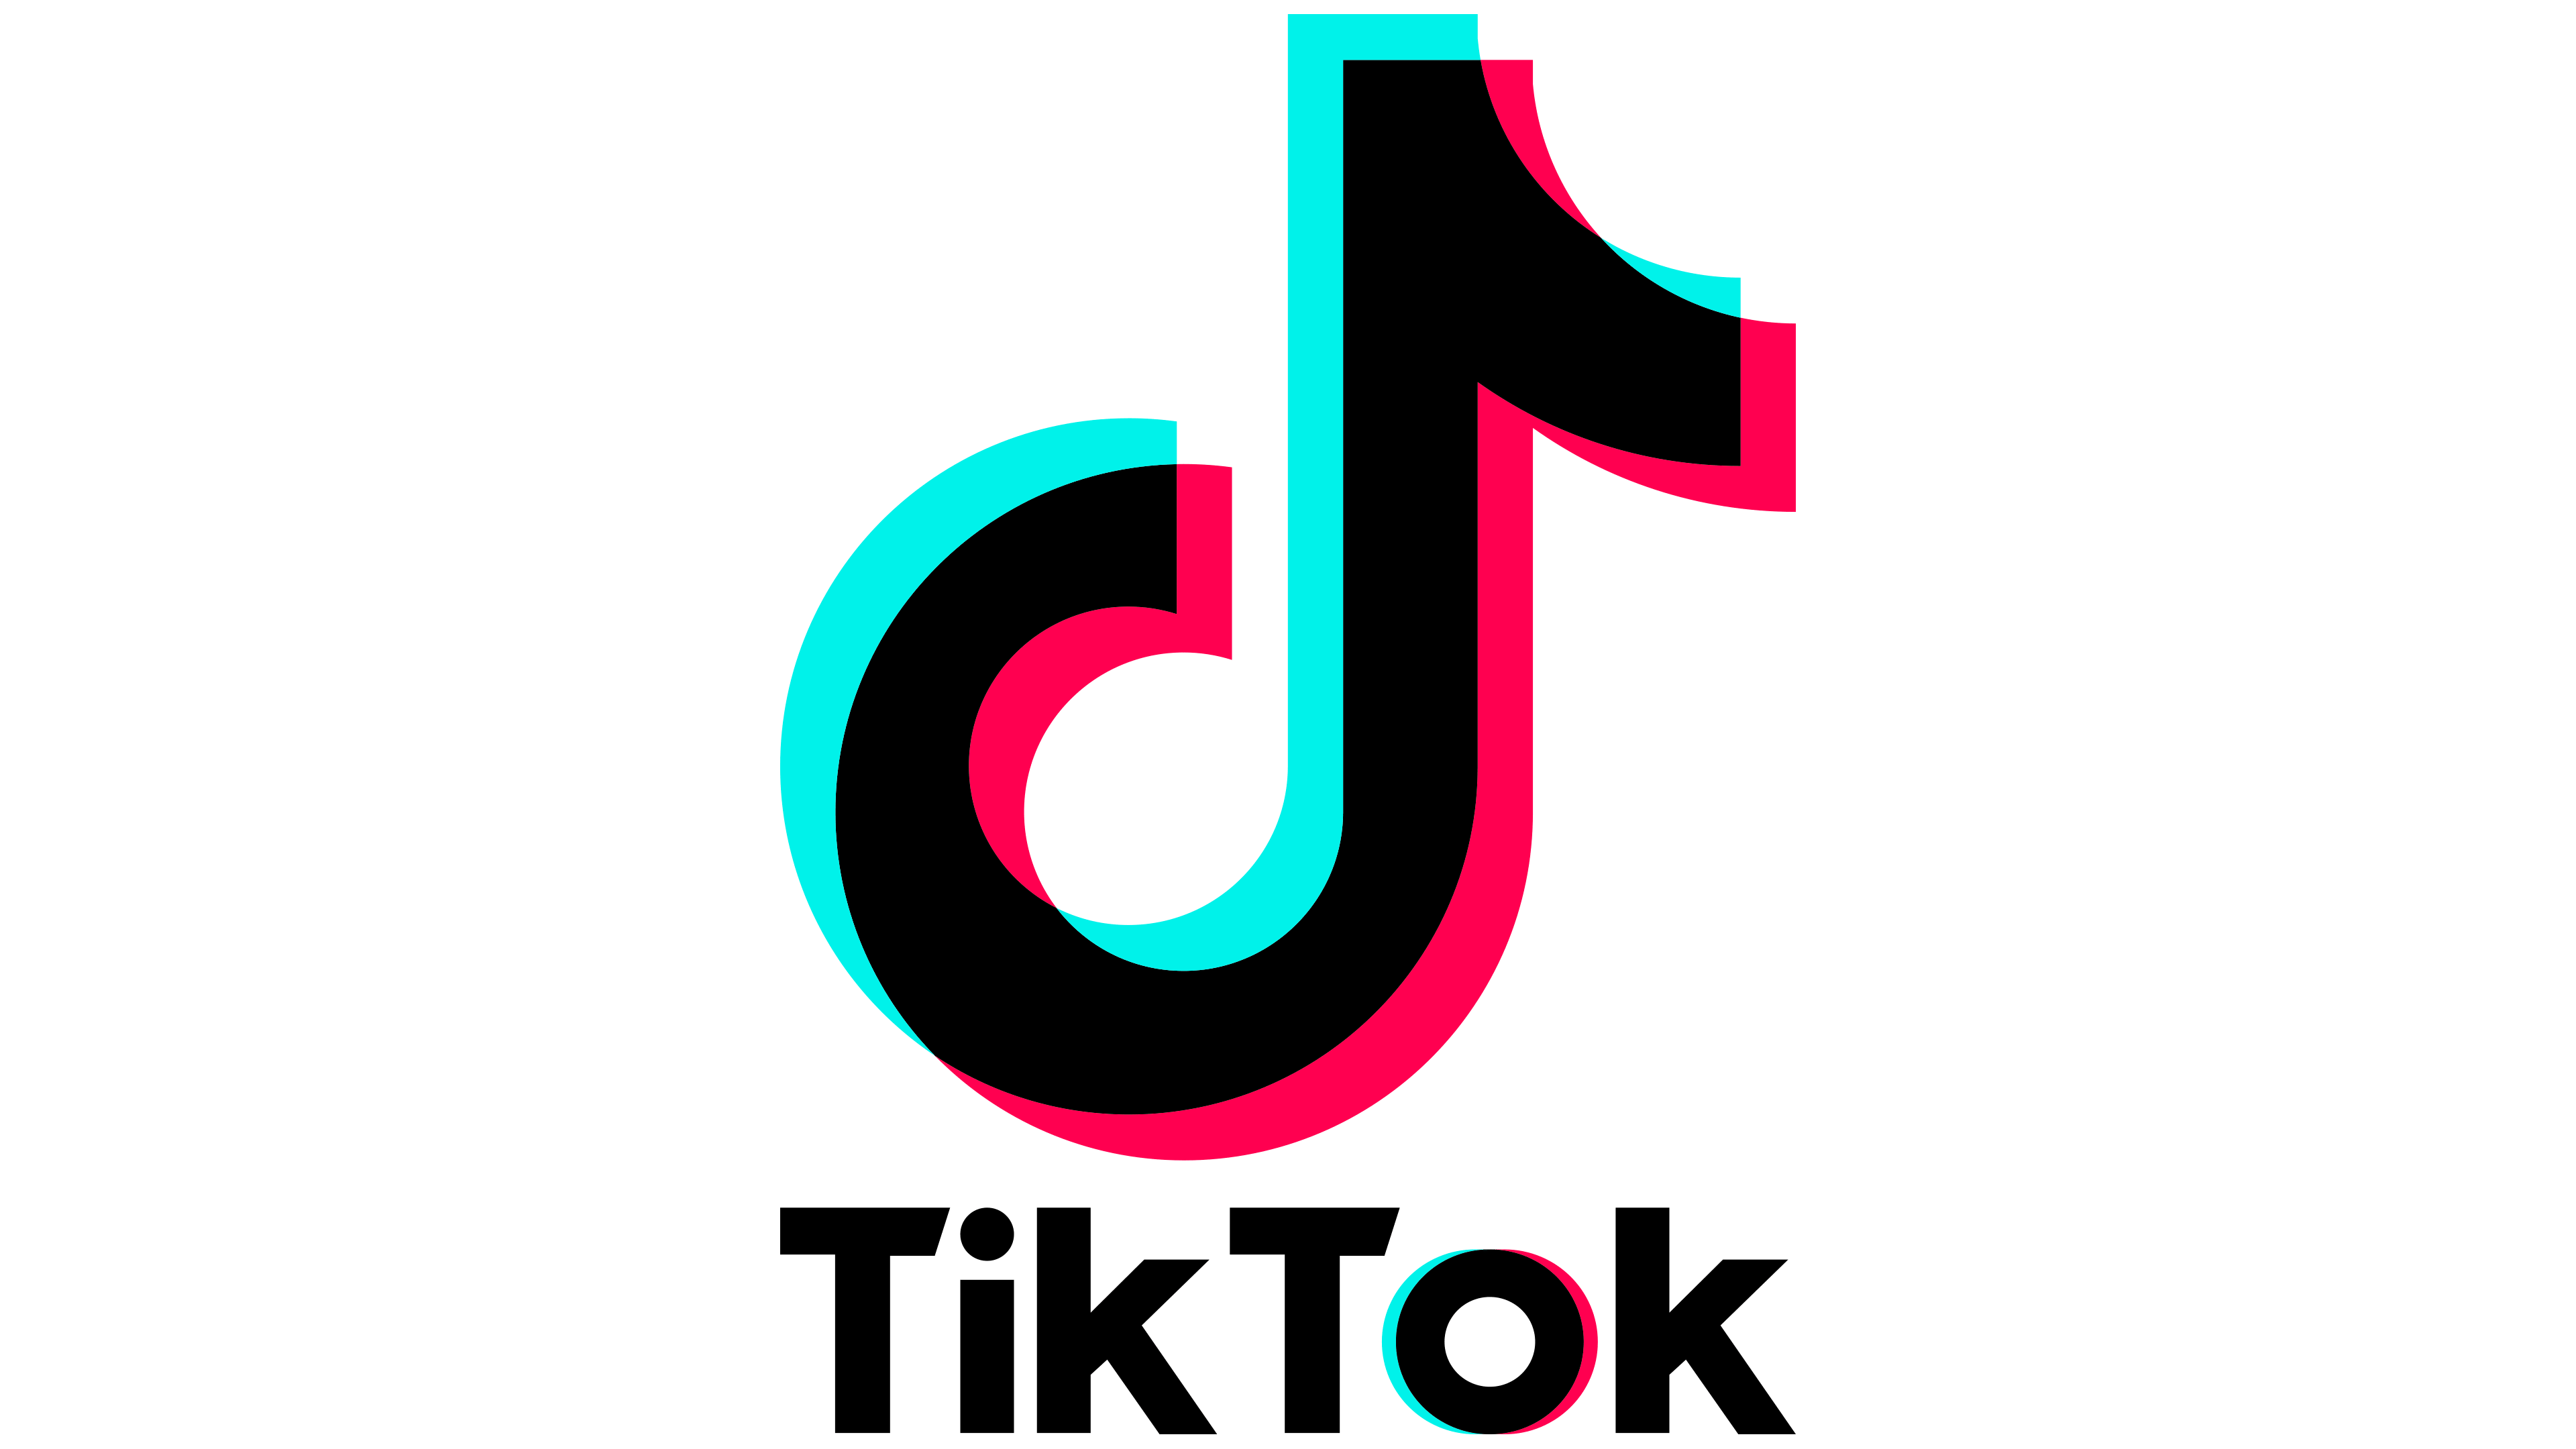 TikTok Logo : histoire, signification de l'emblème